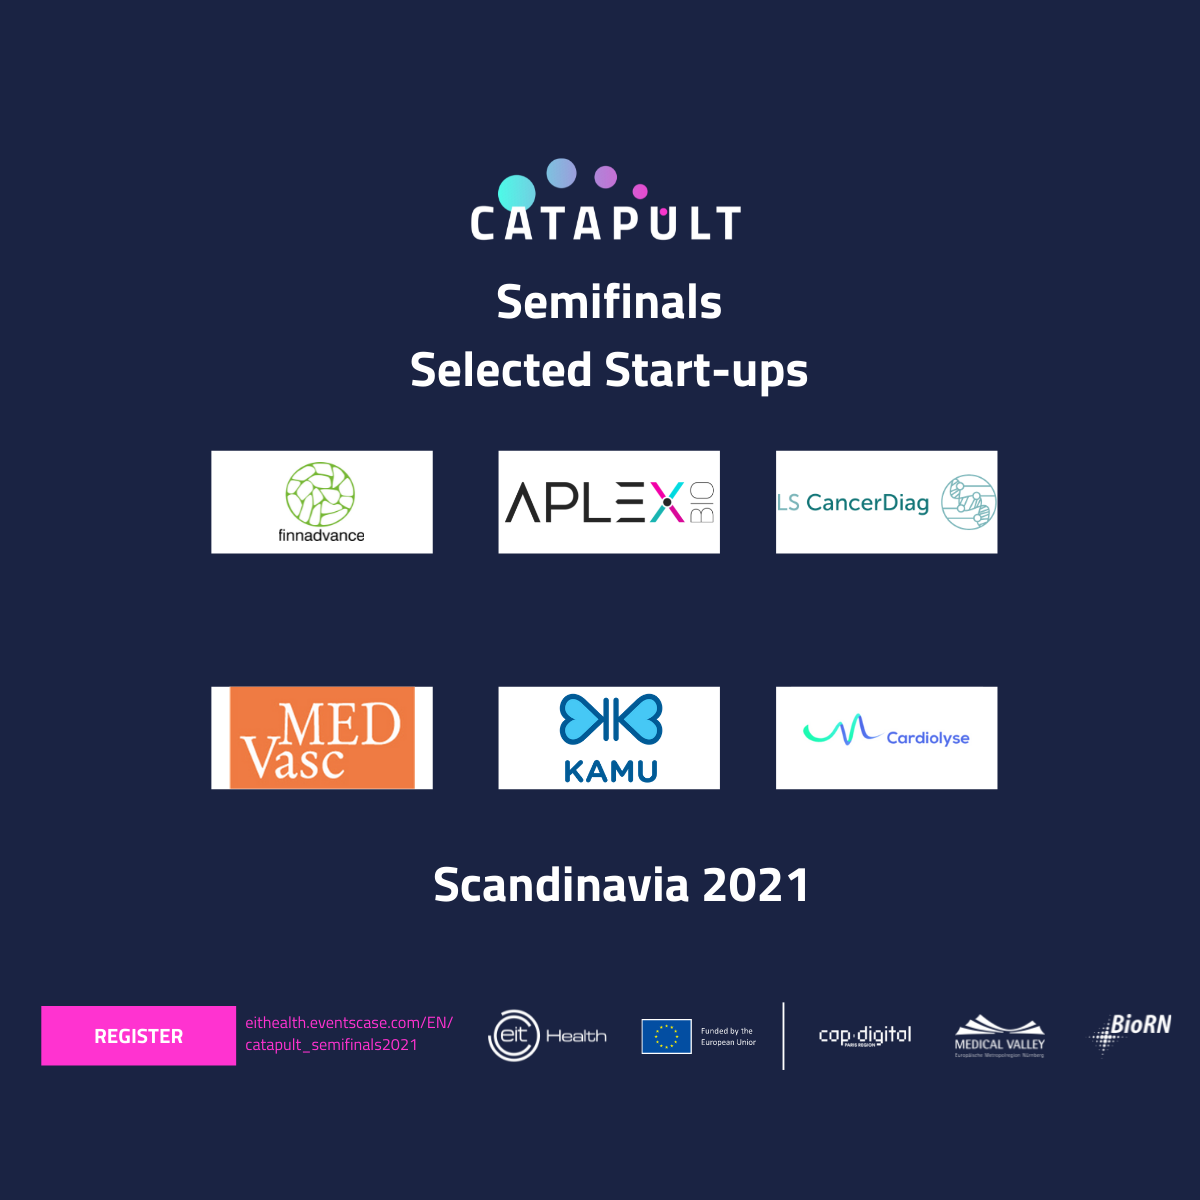 Six Scandinavian start-ups ready for EIT Health Catapult Semifinals